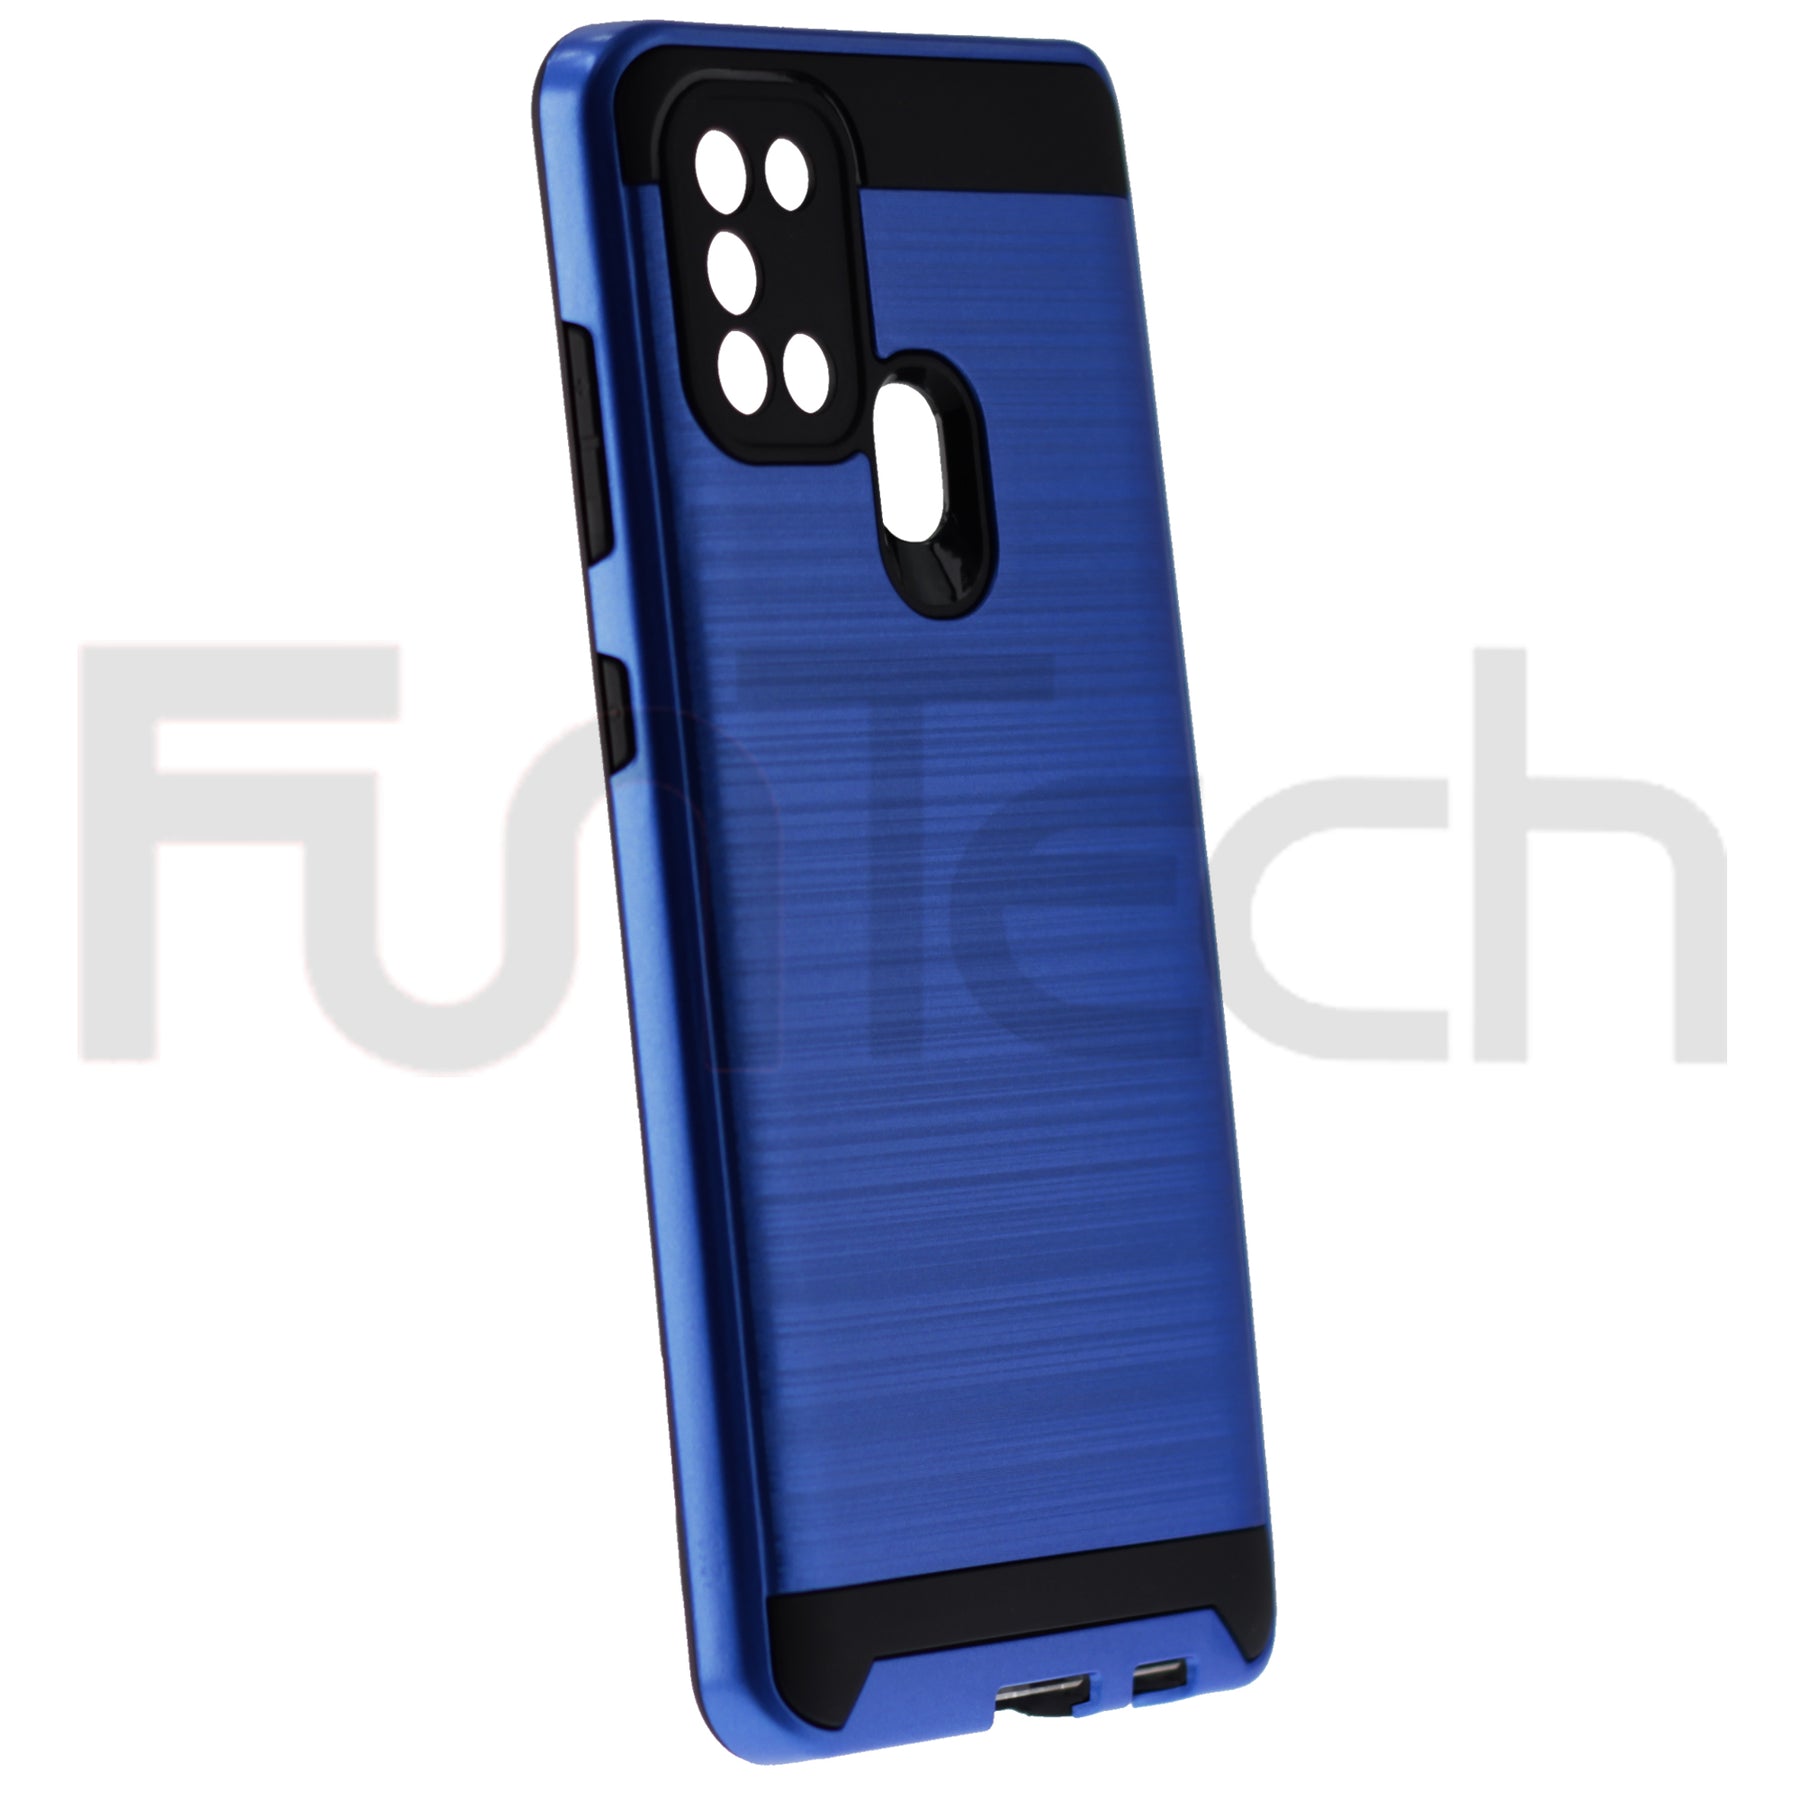 Samsung A21s Case, Color Blue.